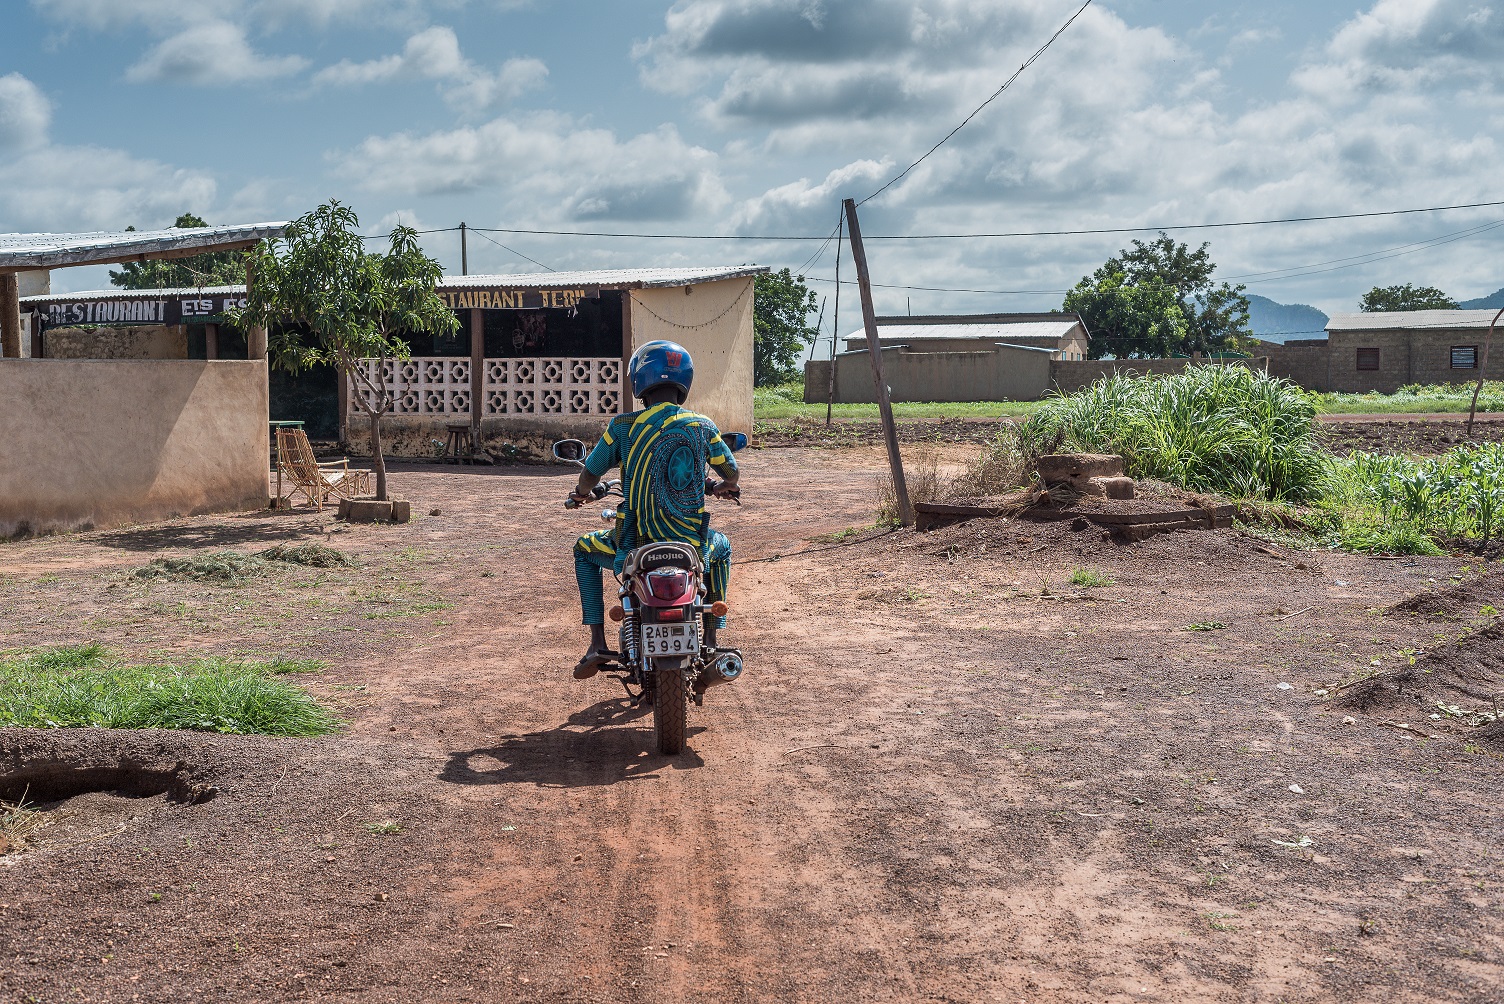 Orou Janvier op de motor in Benin